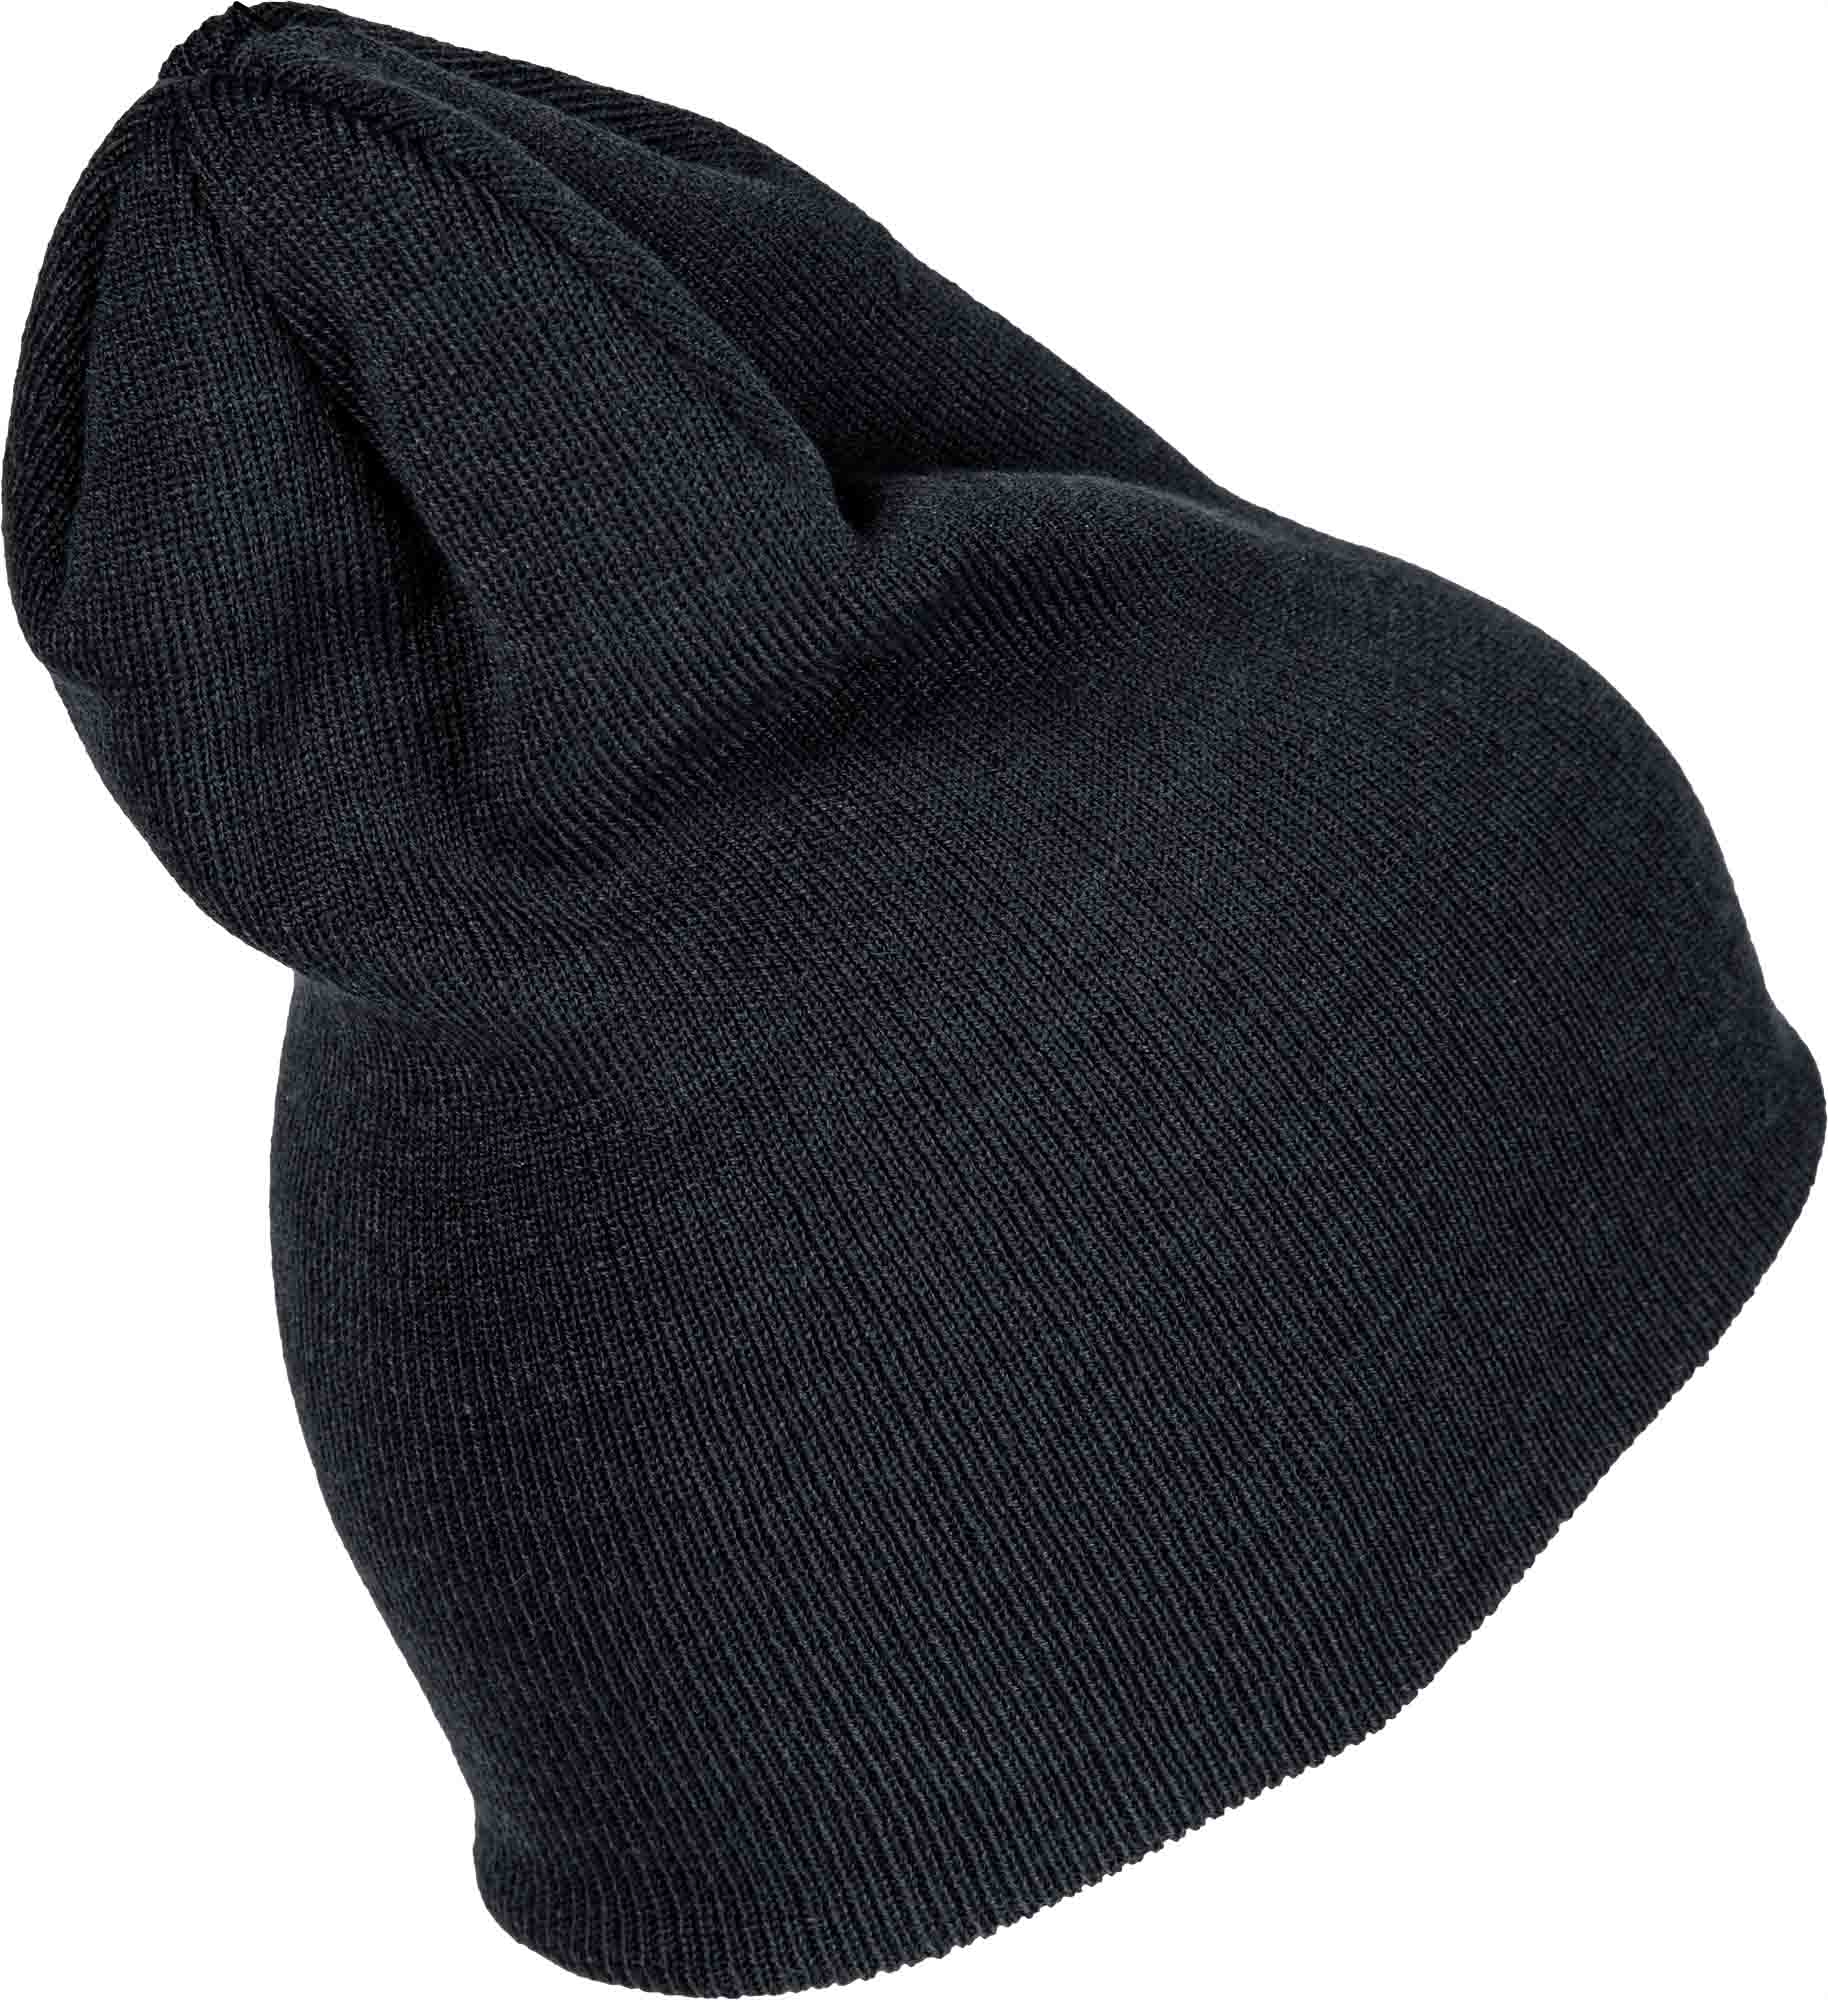 Pletená čepice